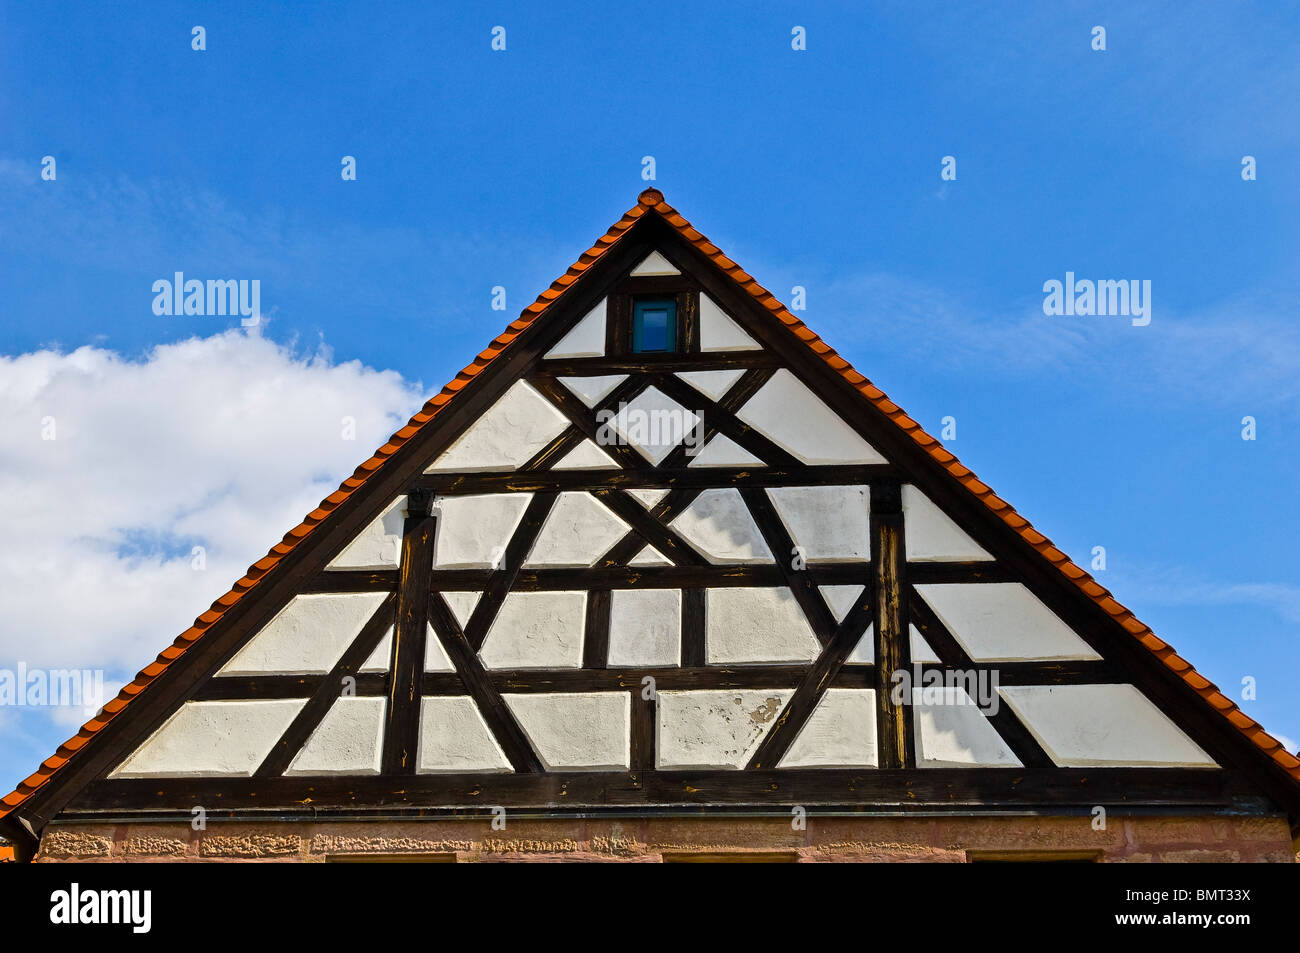 Historische Stadt von Cadolzburg, Freistaat Bayern Stockfoto